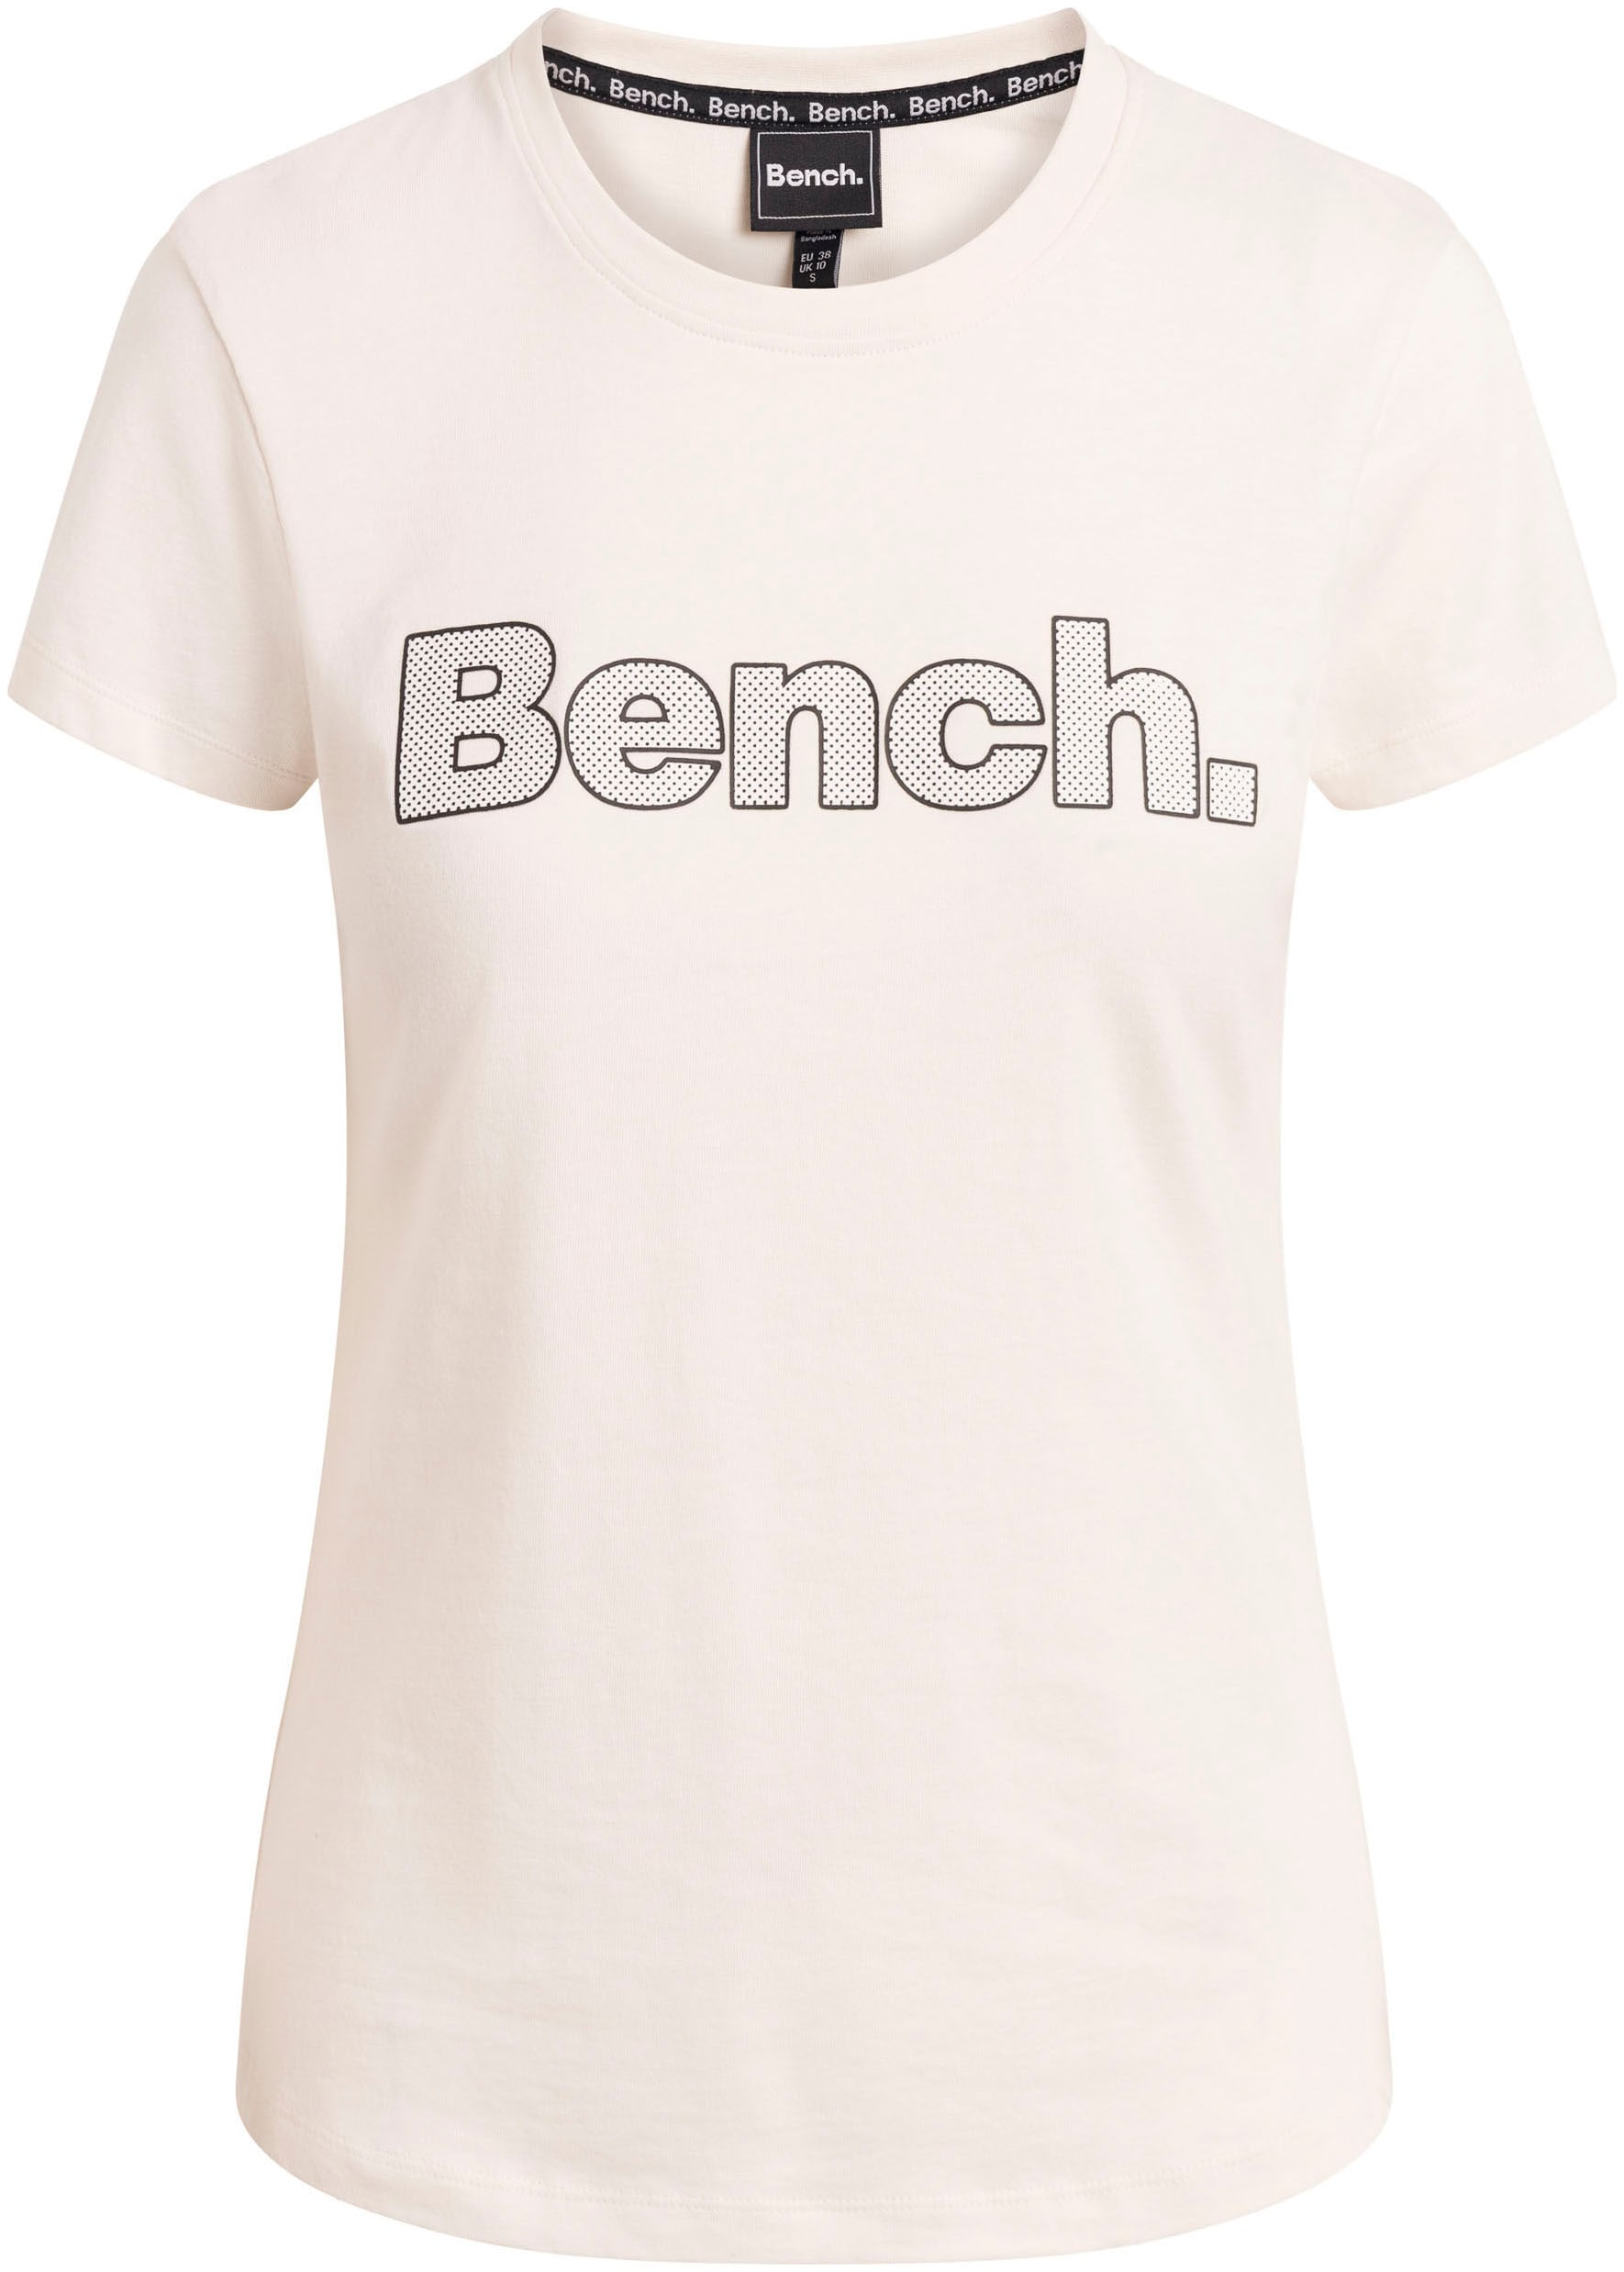 »LEORA« kaufen T-Shirt Bench.